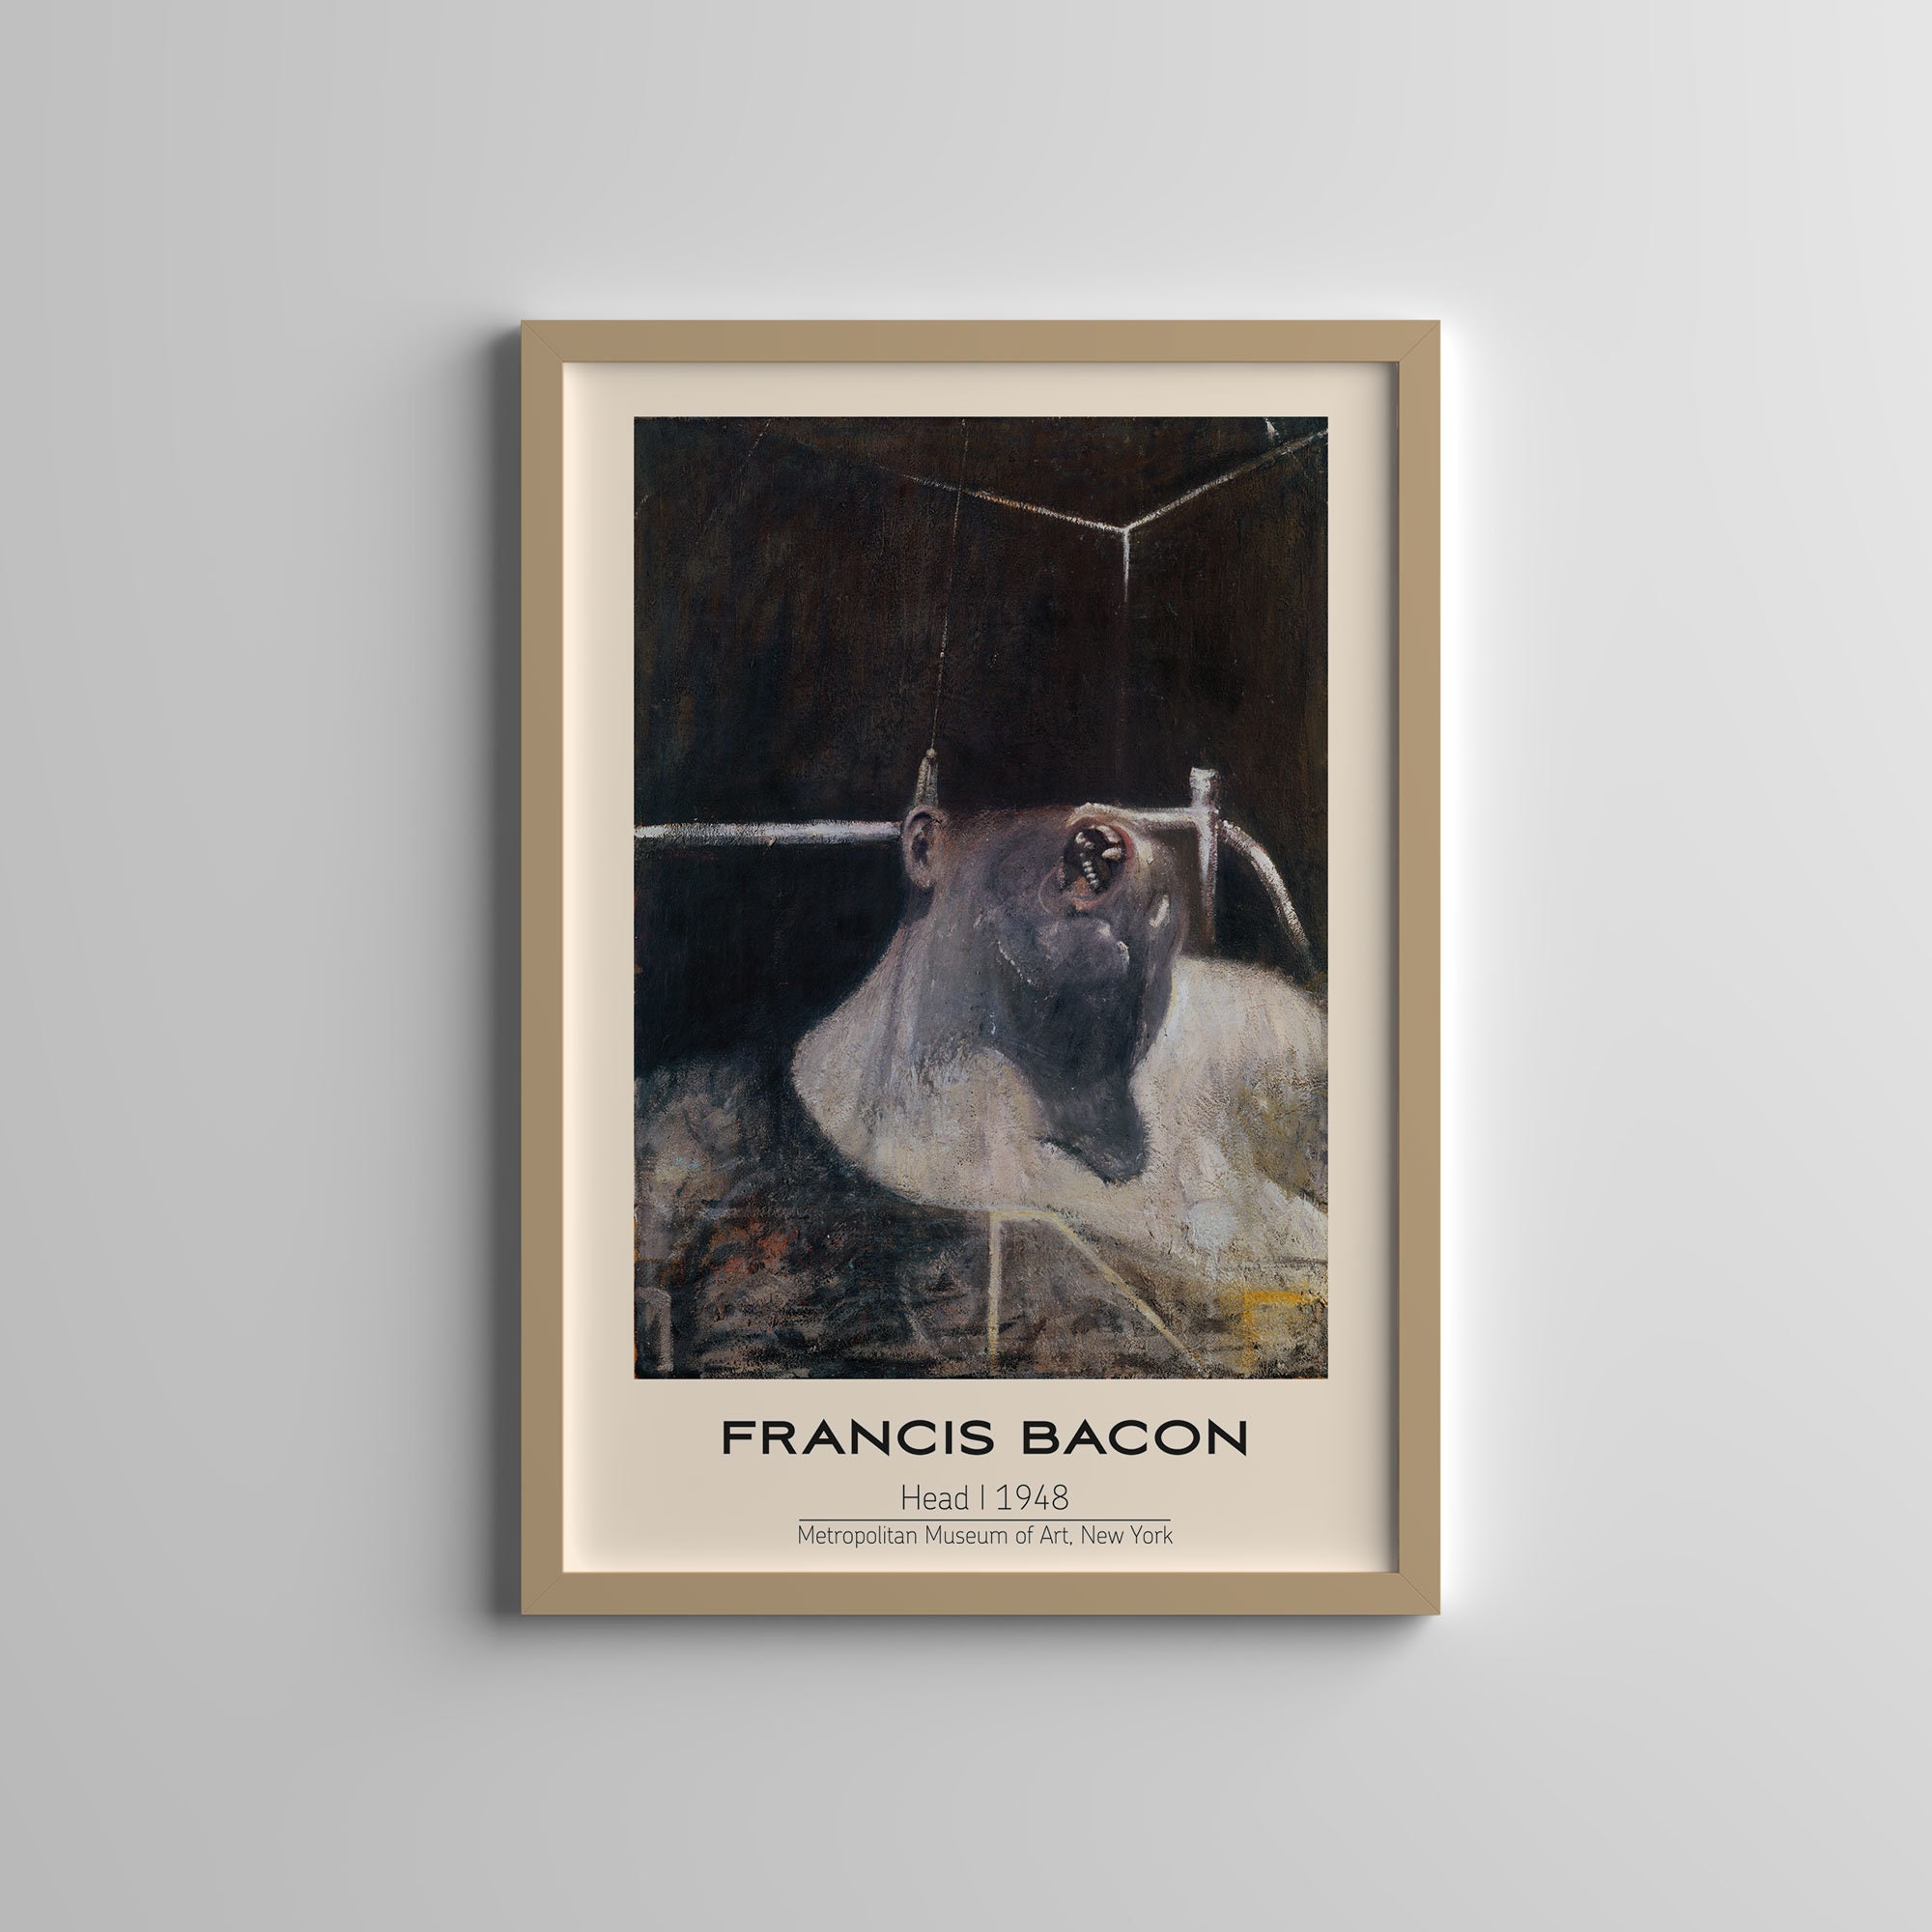 gef off my head bacon | Art Print